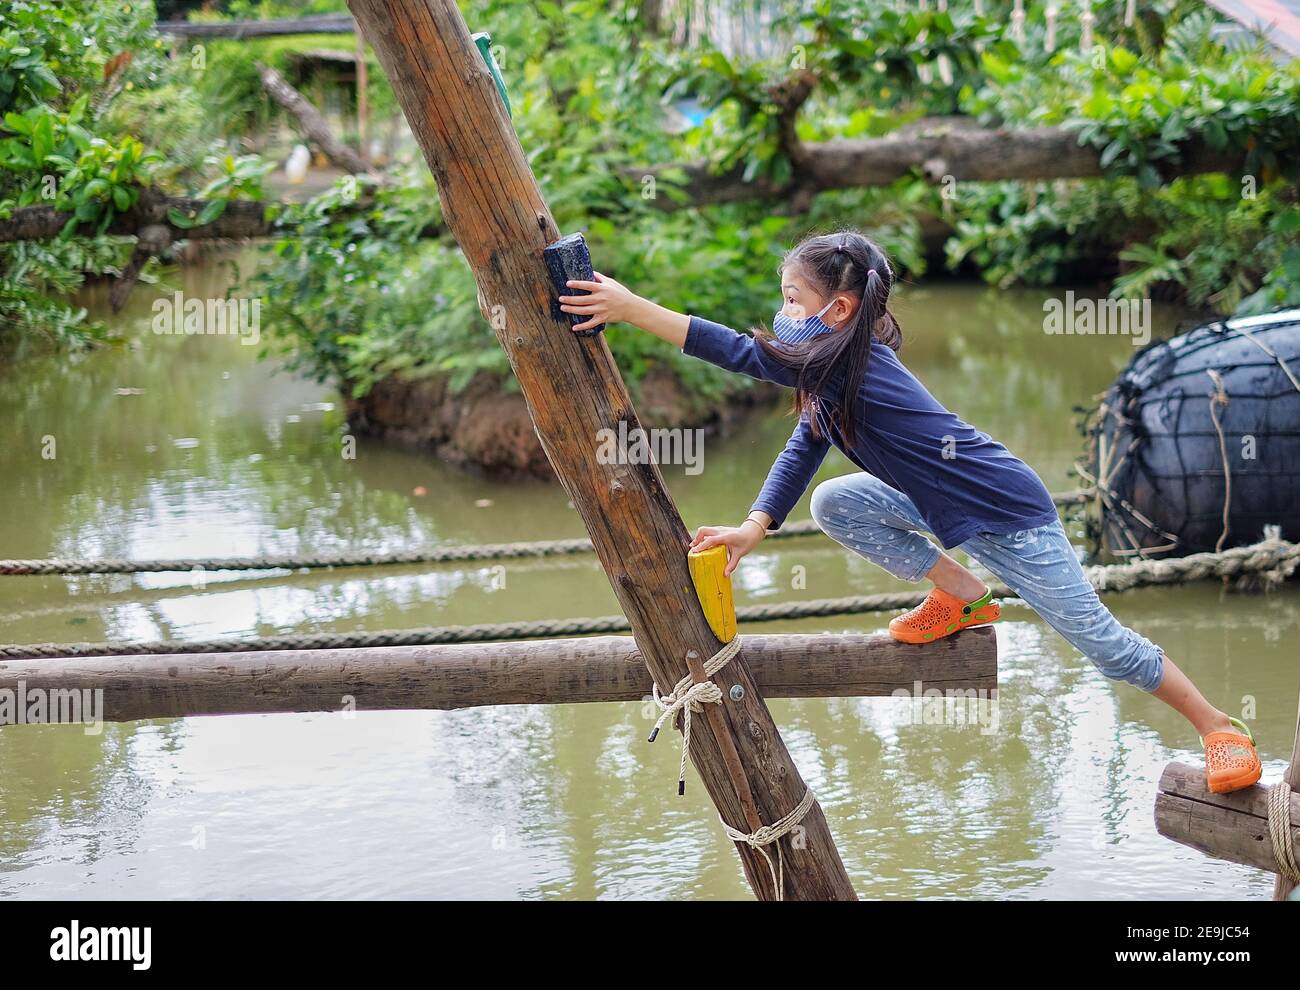 Ein süßes junges asiatisches Mädchen, das versucht, einen kleinen Kanal durch eine Holzstruktur mit sich öffnenden Lücken zu überqueren, mutig, aber vorsichtig sein, um ihr Ziel zu erreichen. Stockfoto